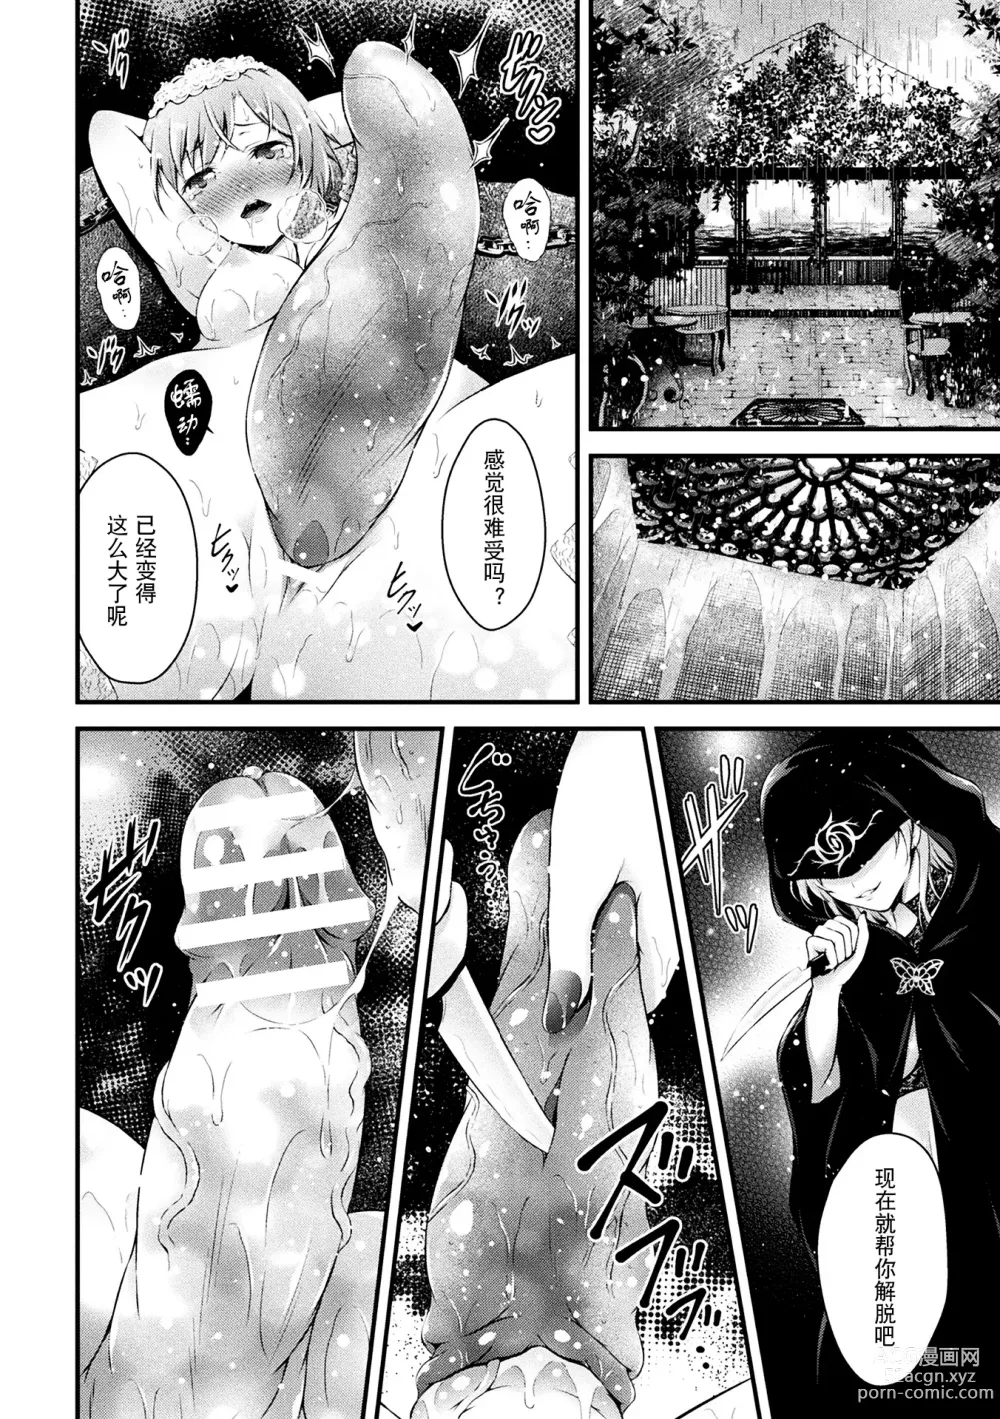 Page 8 of manga Futahime